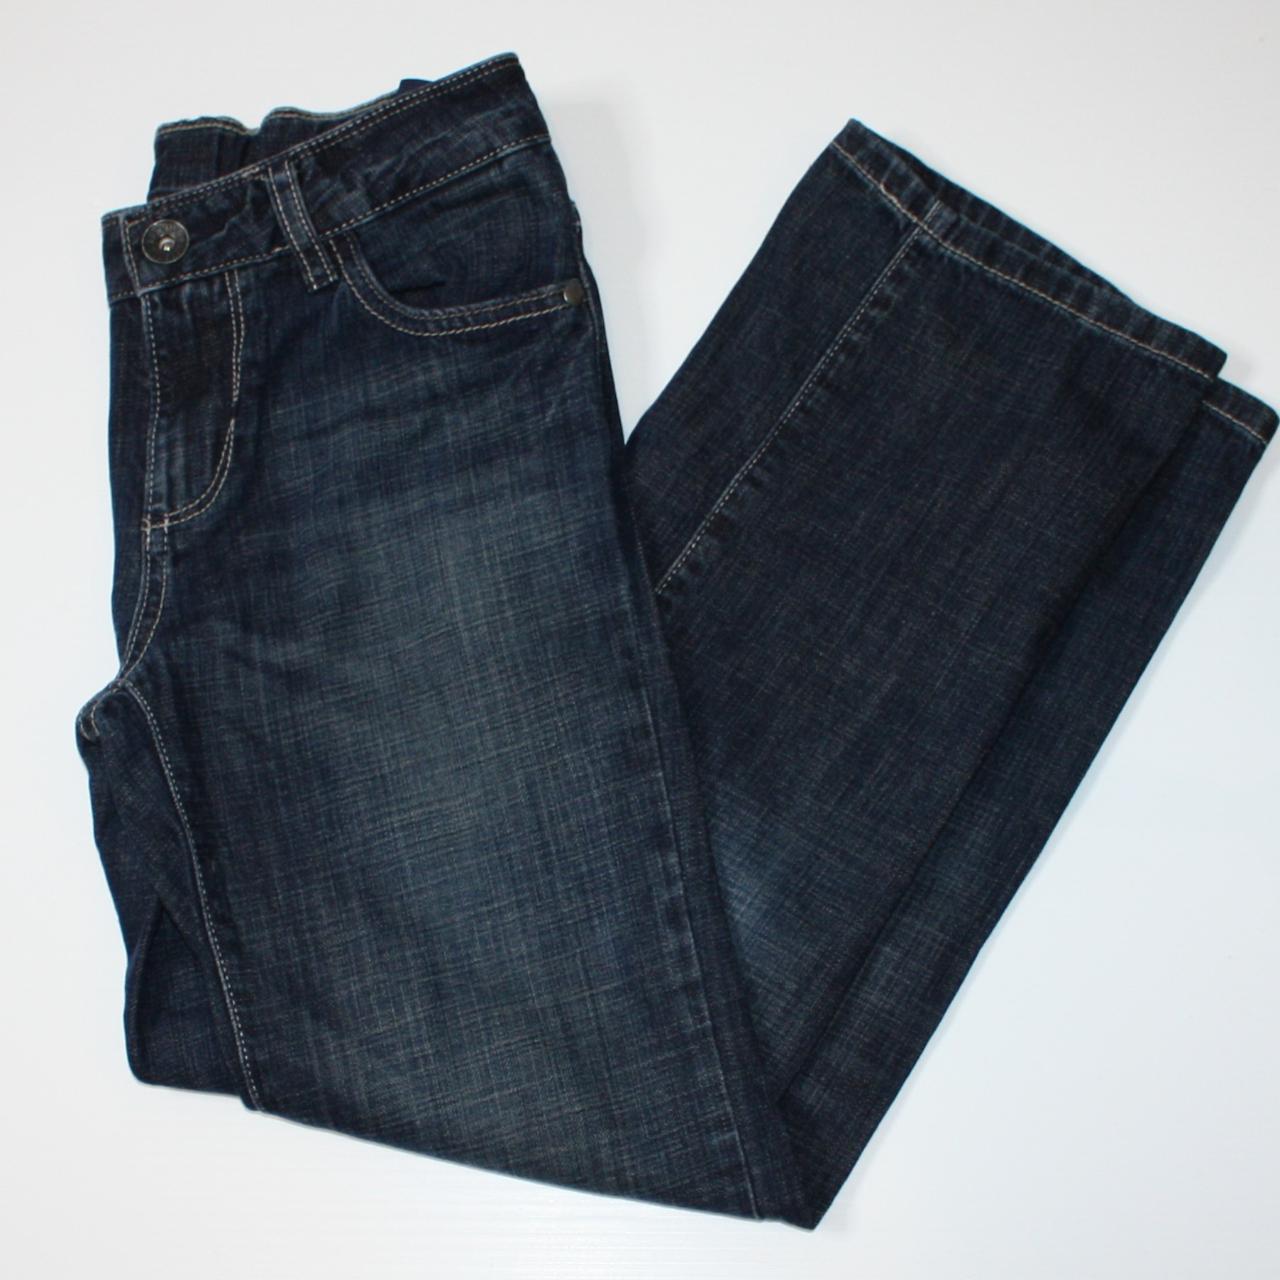 Tommy Hilfiger Boy's Dark Blue Wash Denim Jeans... - Depop